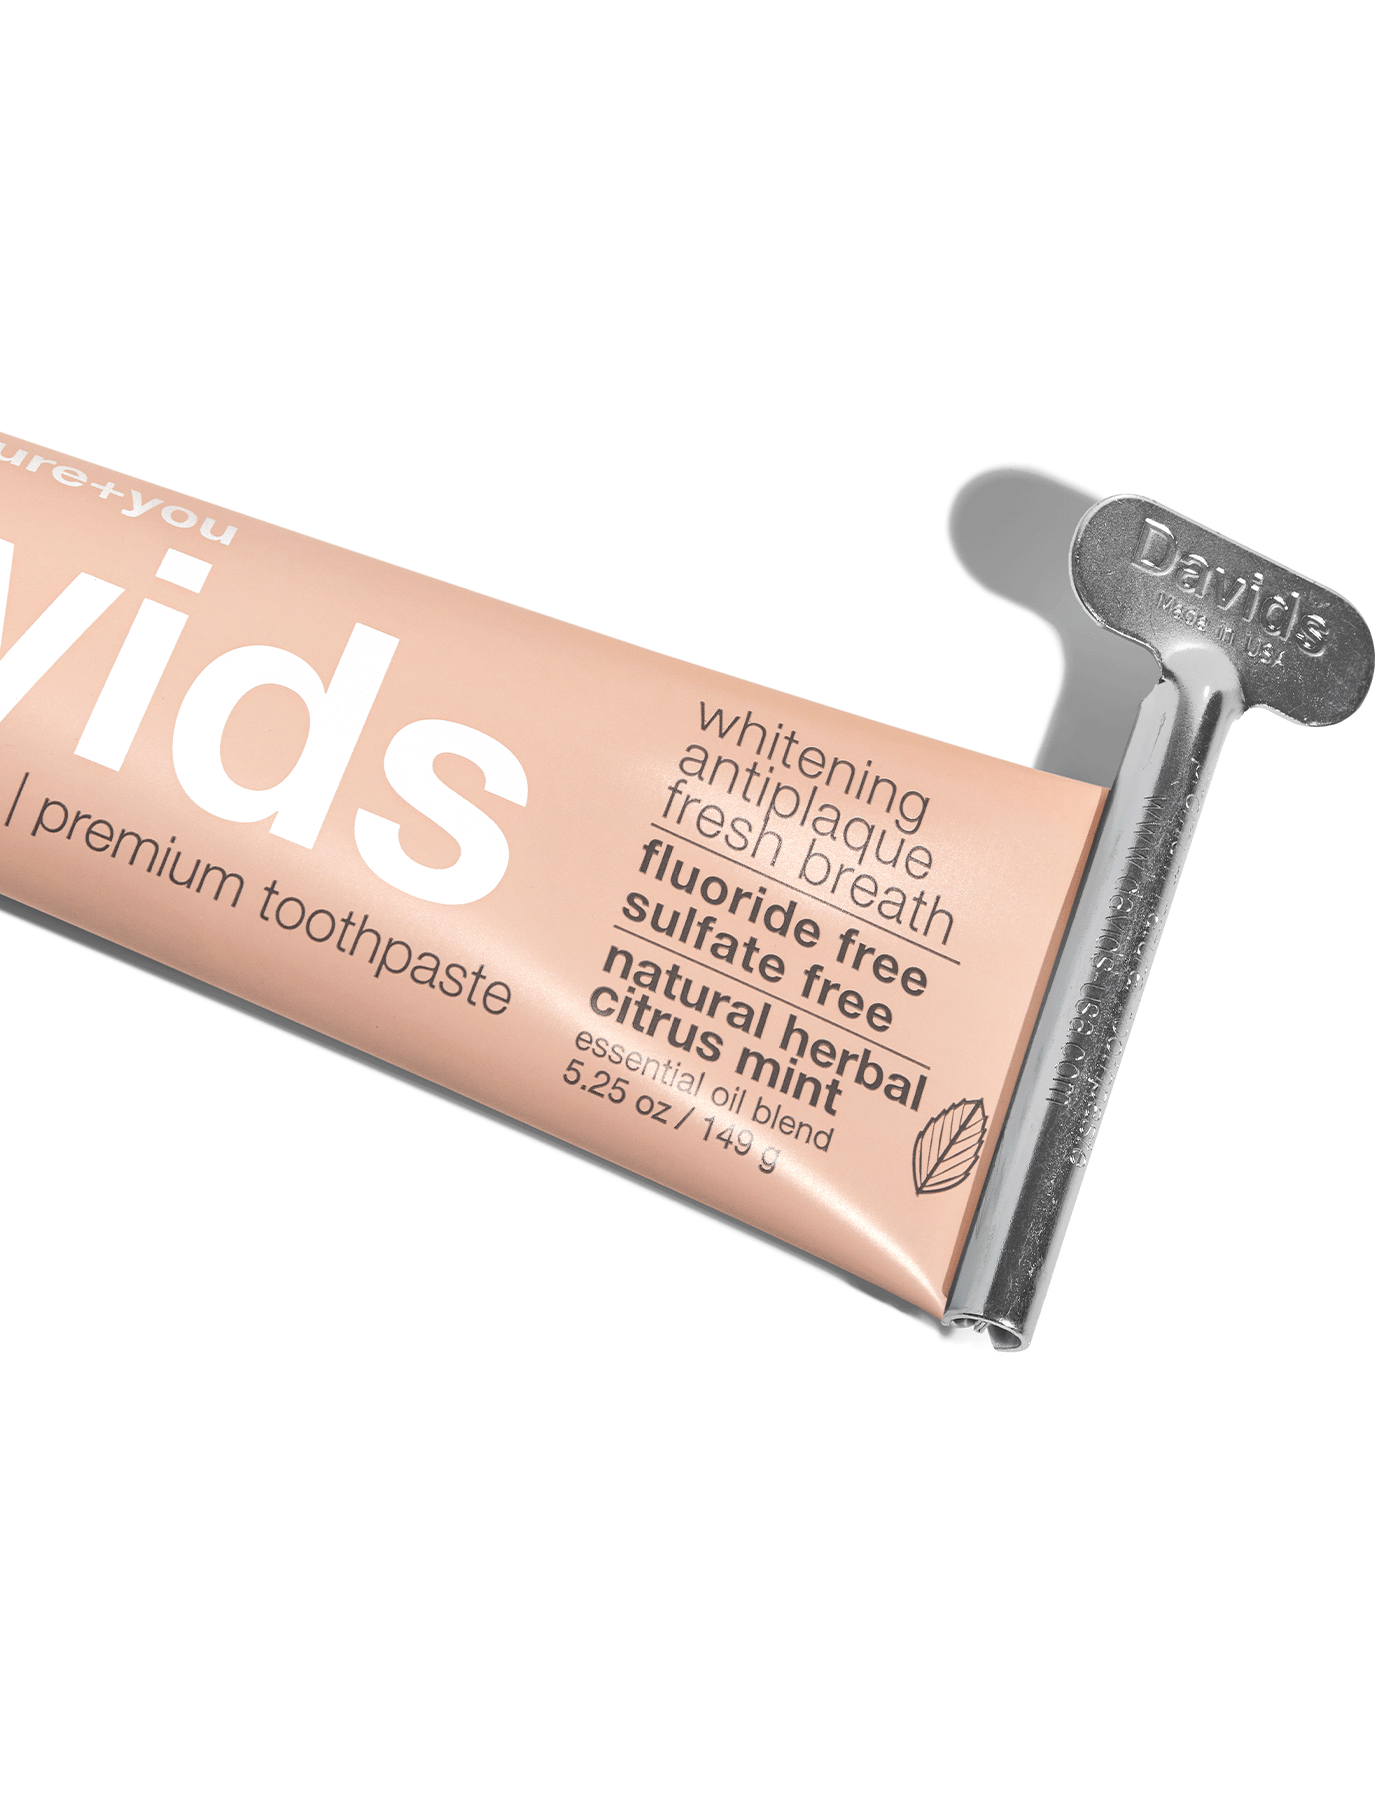 Davids Premium Toothpaste - Herbal Citrus Peppermint